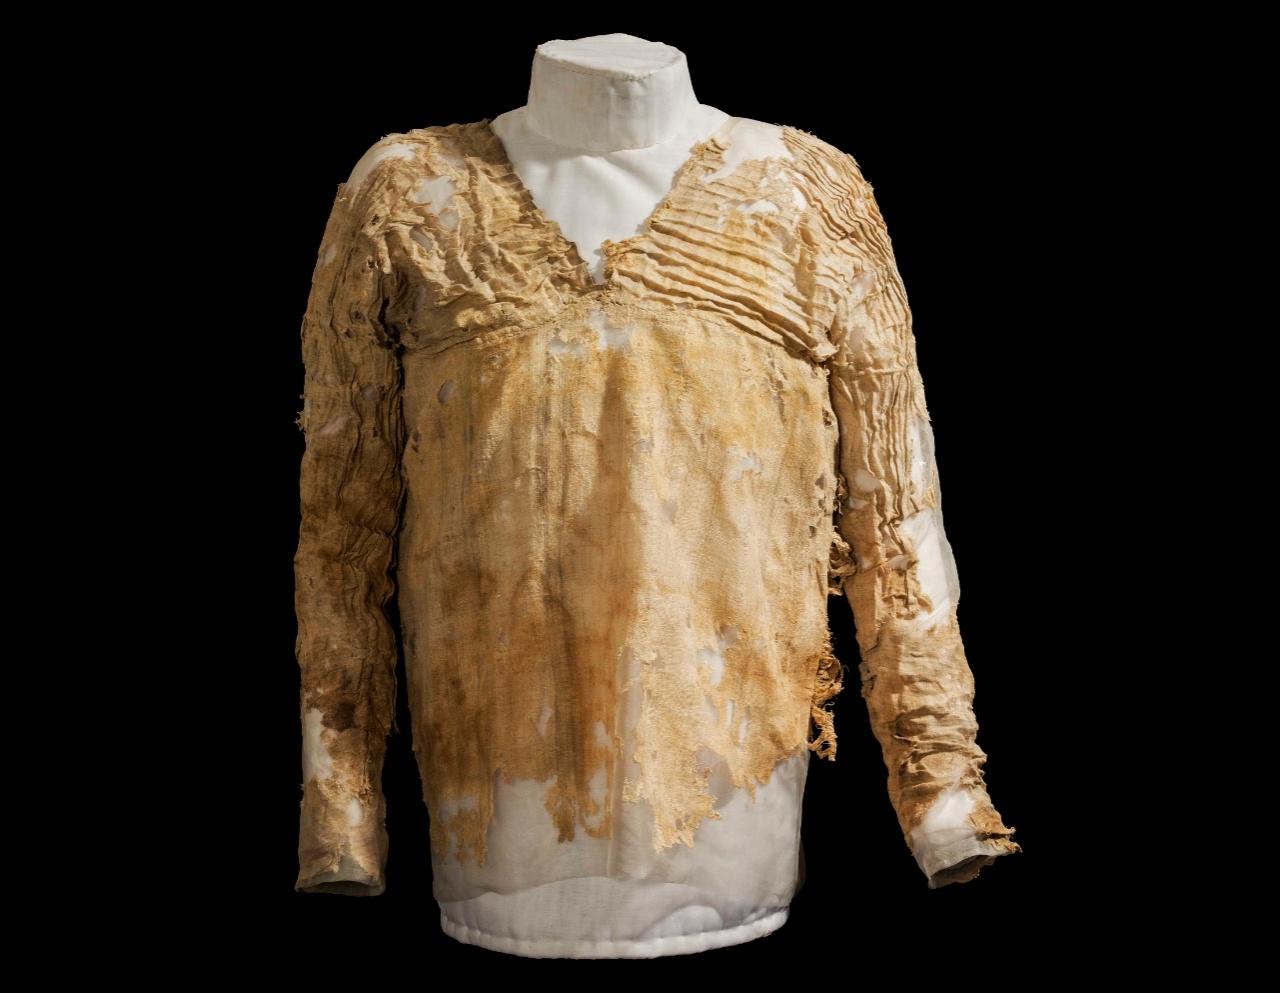 Povestea incredibilă din spatele celei mai vechi rochii din lume din Egipt, care are peste 5,000 de ani 1